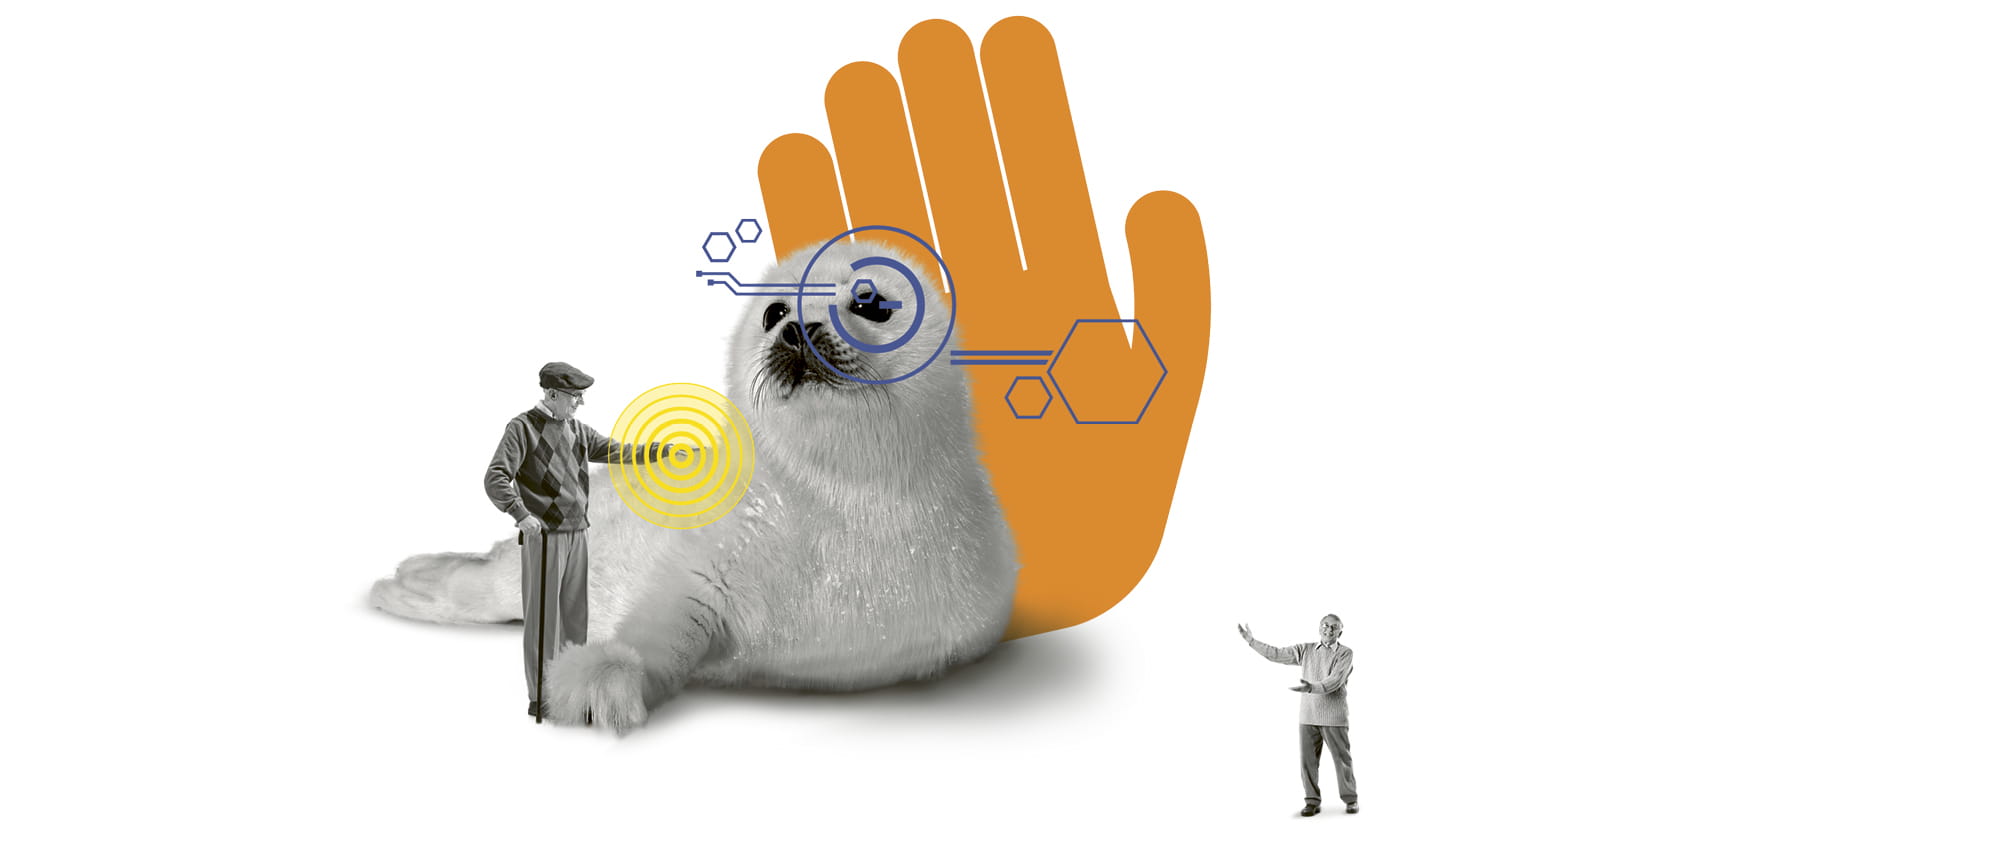 Illustration eines Robbenbabies, dass von einem älteren Mann, der halb so groß ist, gestreichelt wird mit einer illustrierten orangenen Hand im Hintergrund. 